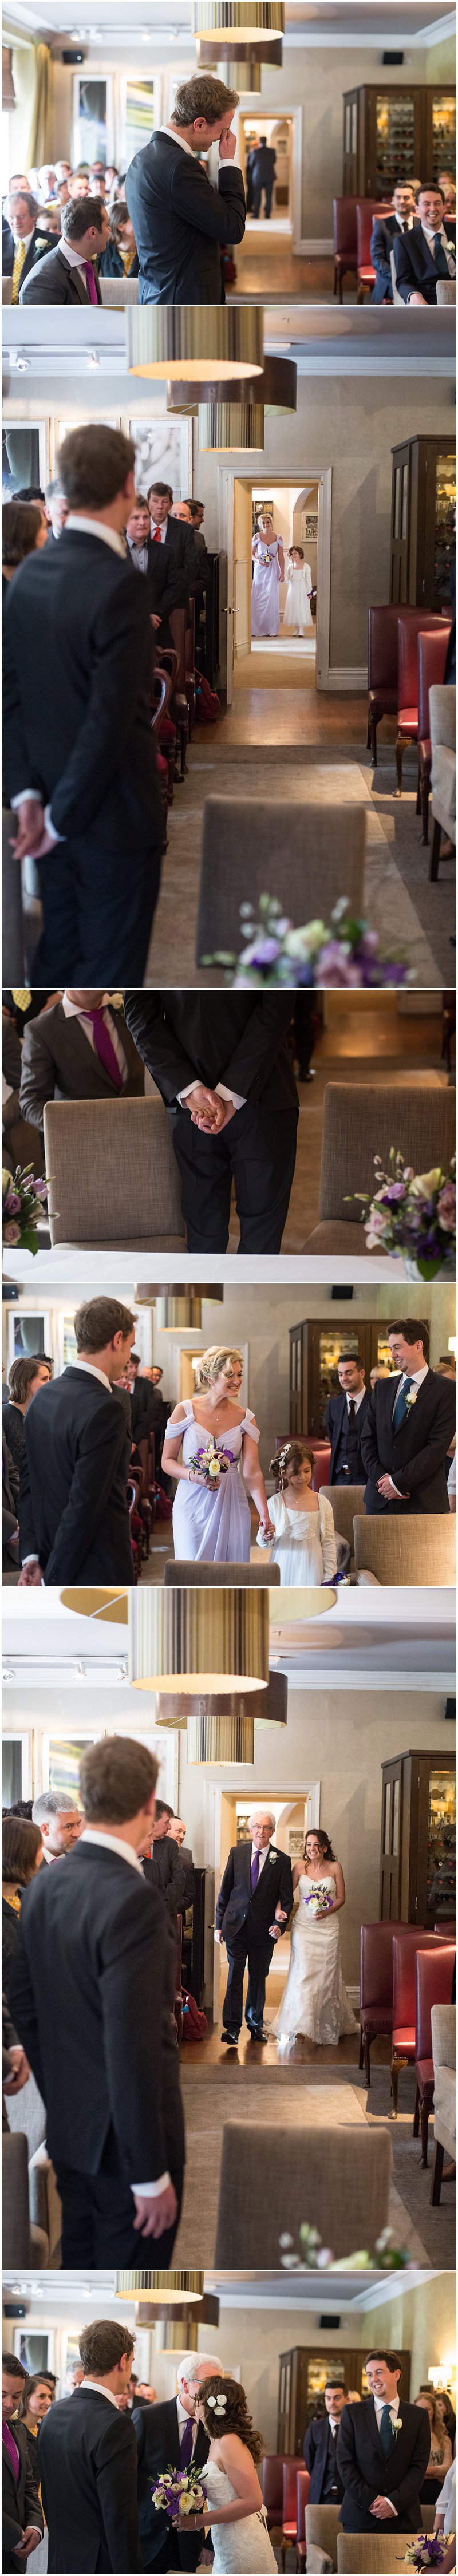 Wedding ceremony at Linthwaite House Hotel, Cumbria 